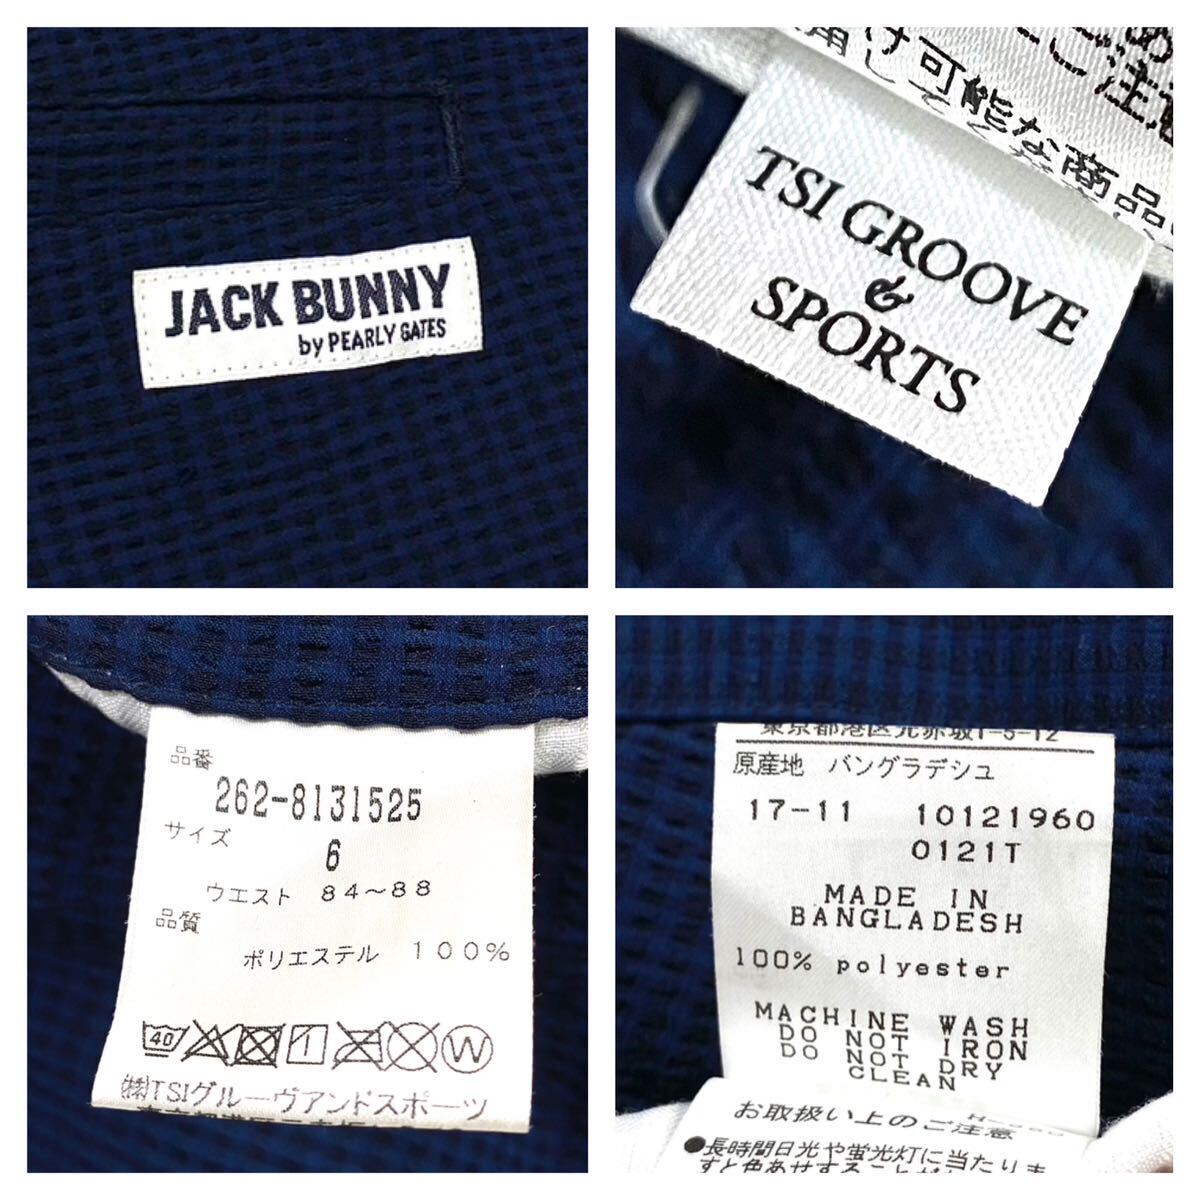 良品 JACK BUNNY/ジャックバニー ゴルフウェア スラックス ストレッチ素材 メンズ6 ネイビー系 PEARLY GATES/パーリーゲイツの画像2